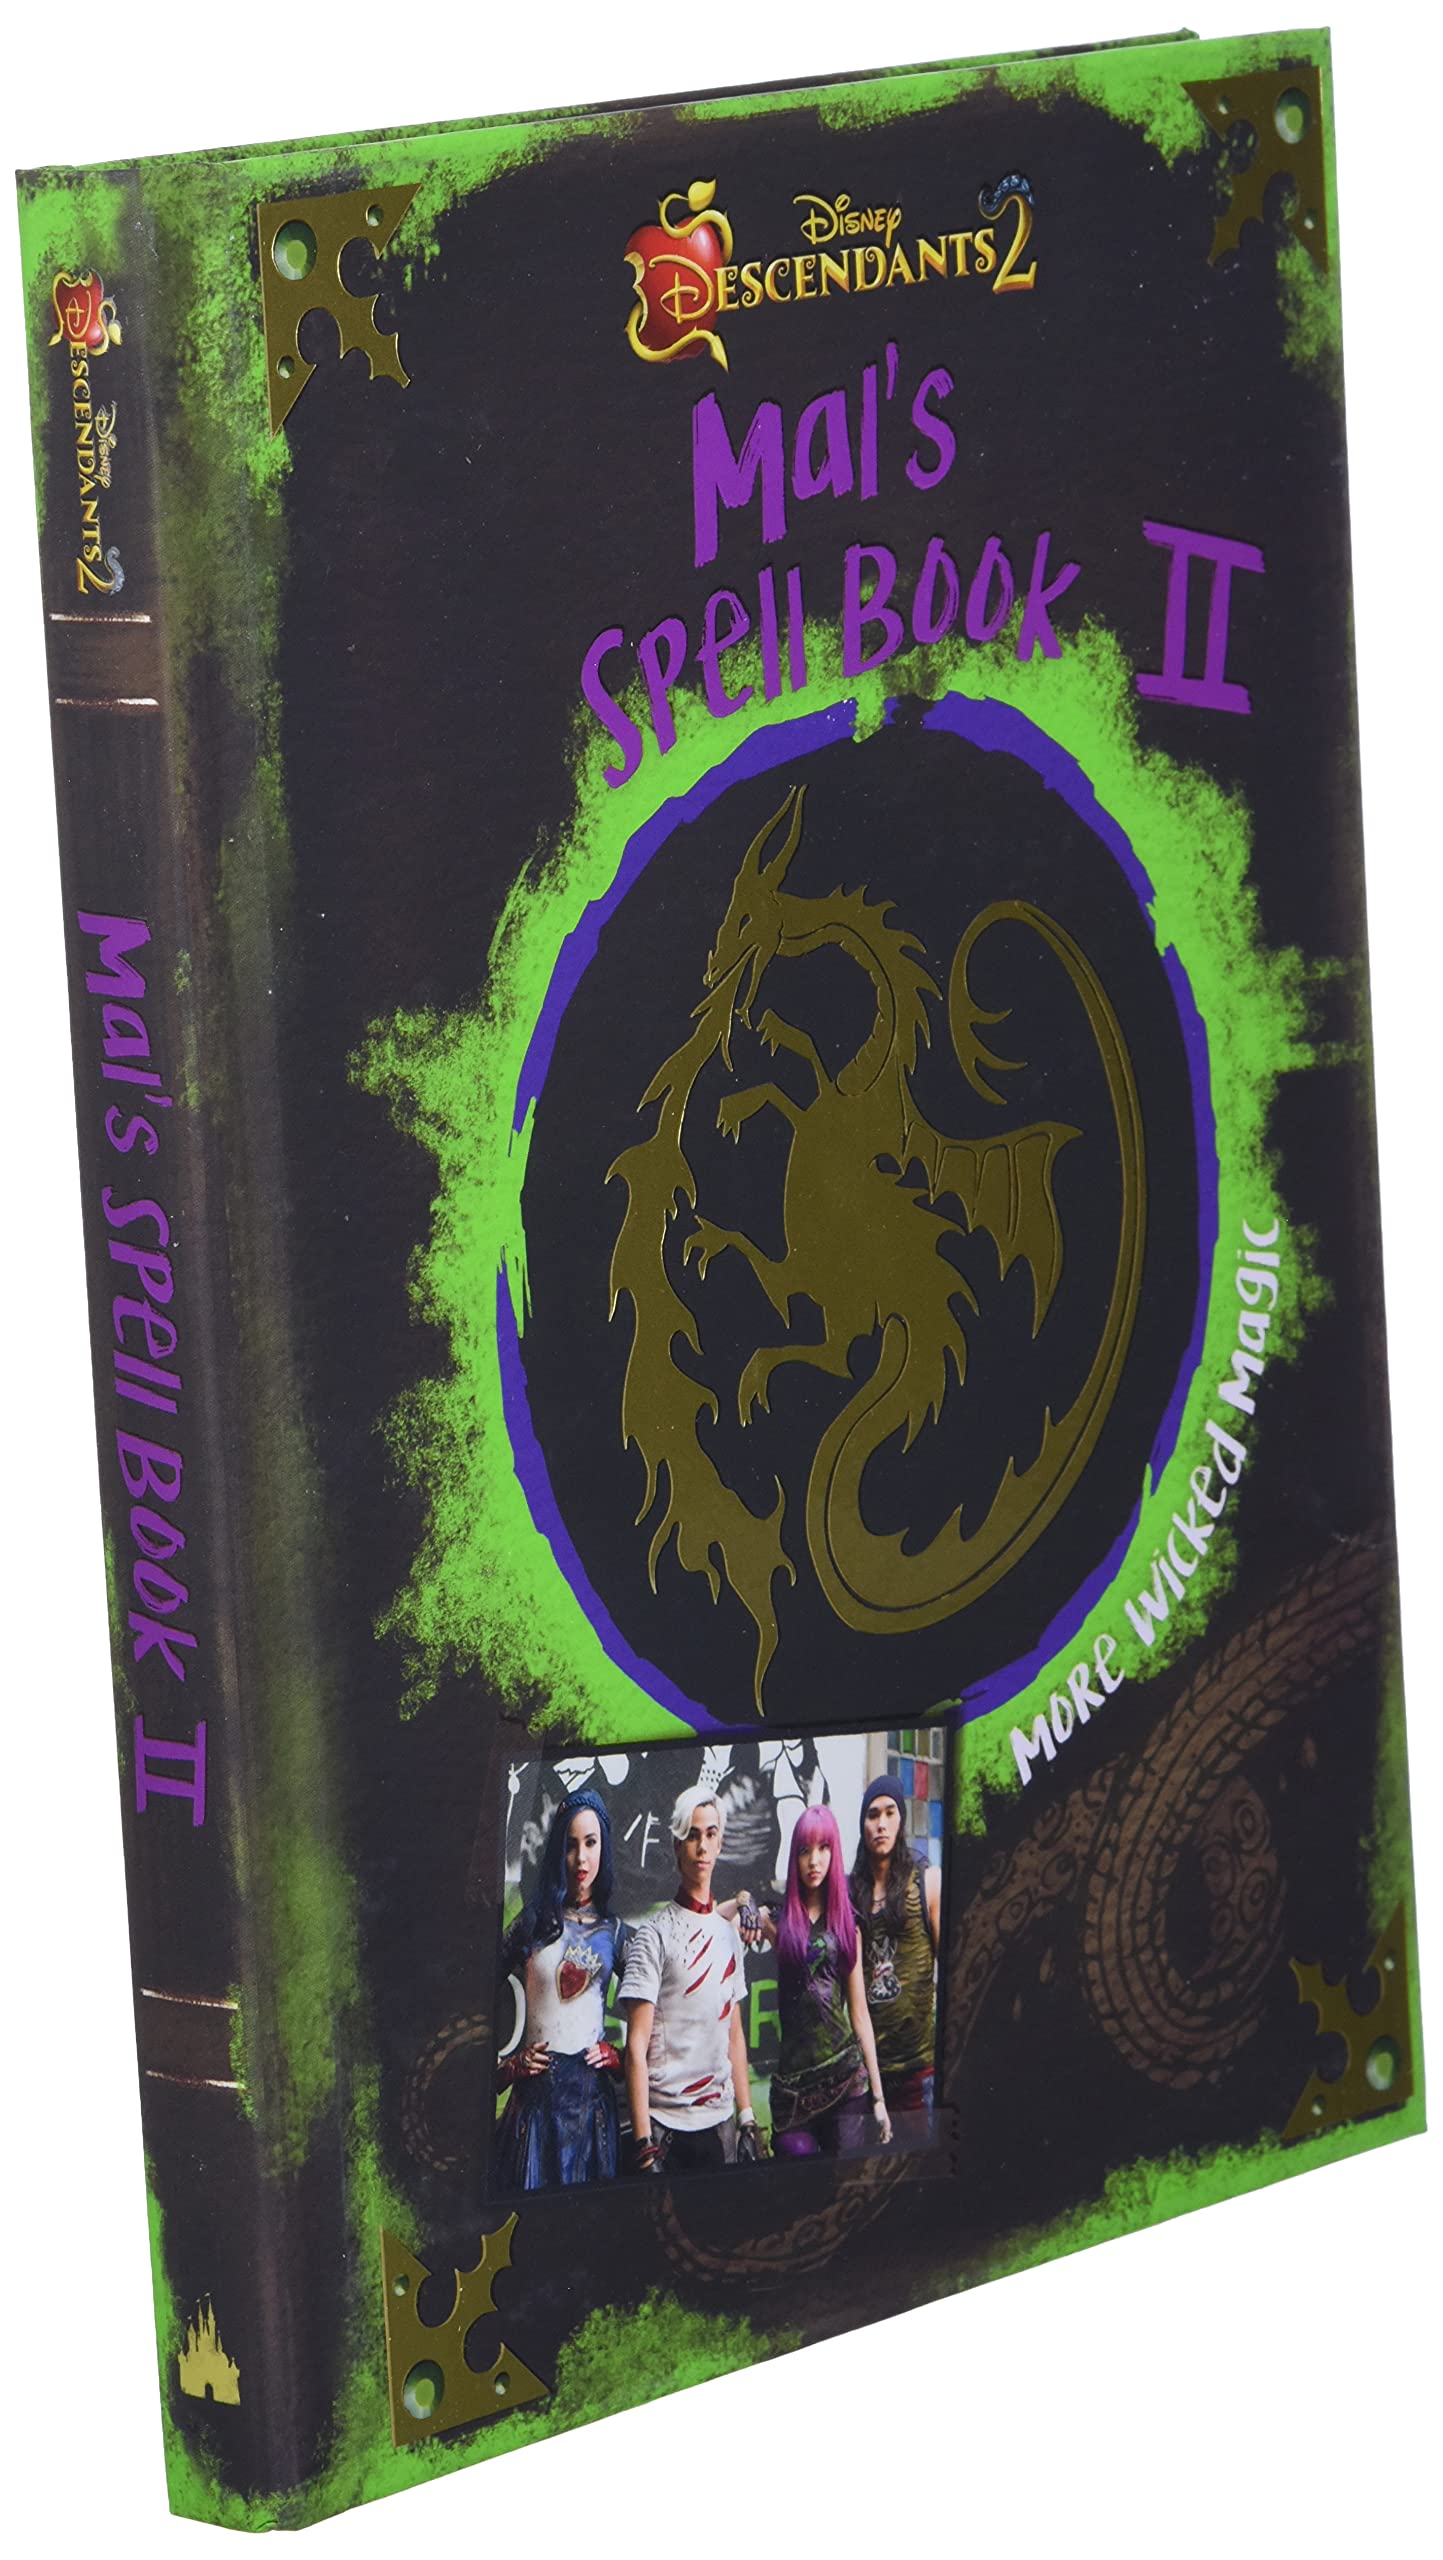 Descendants 2 : Mal's Spell Book 2: More Wicked Magic